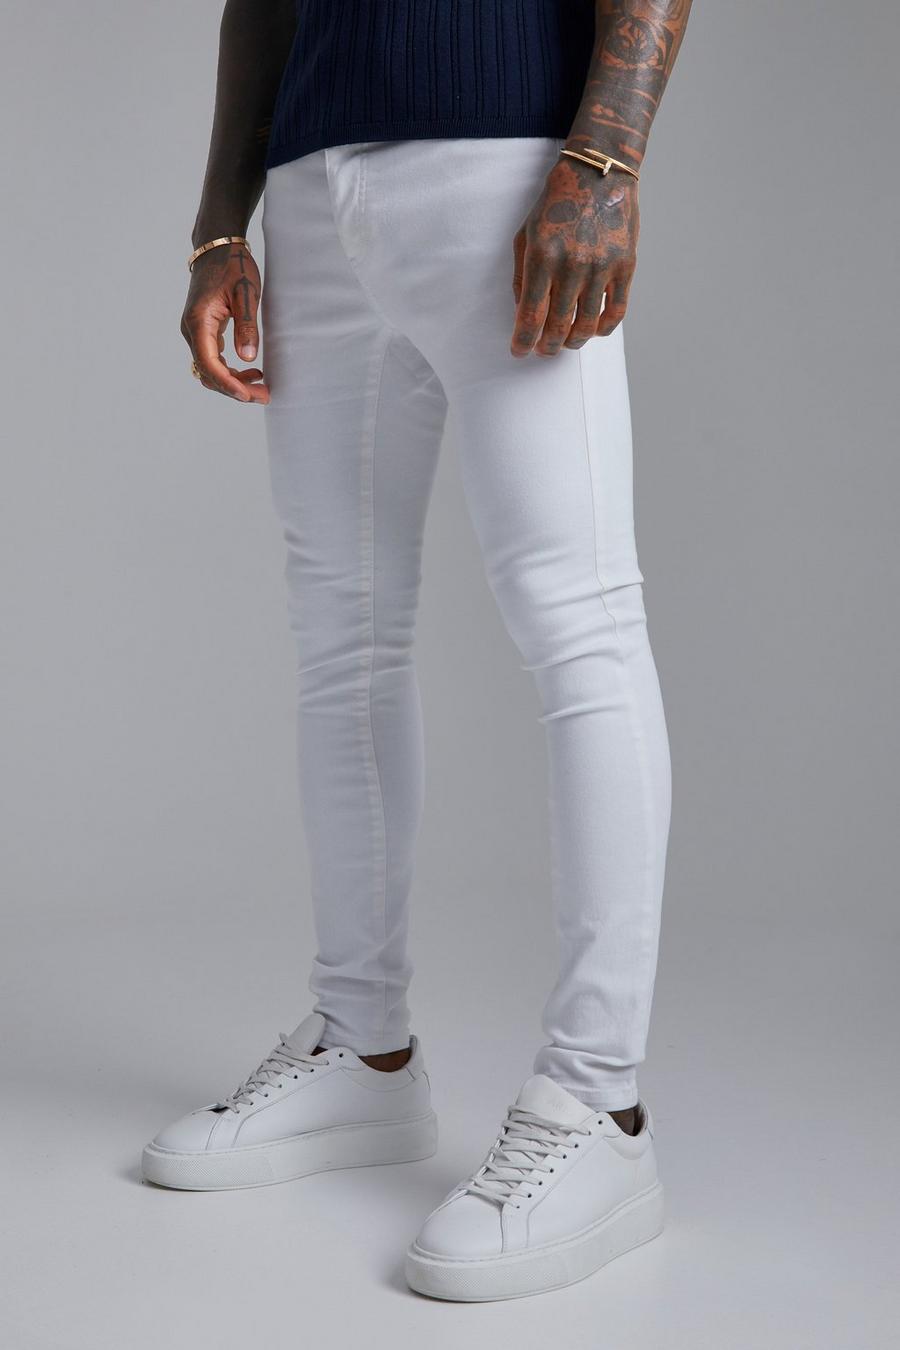 לבן white סופר סקיני ג'ינס